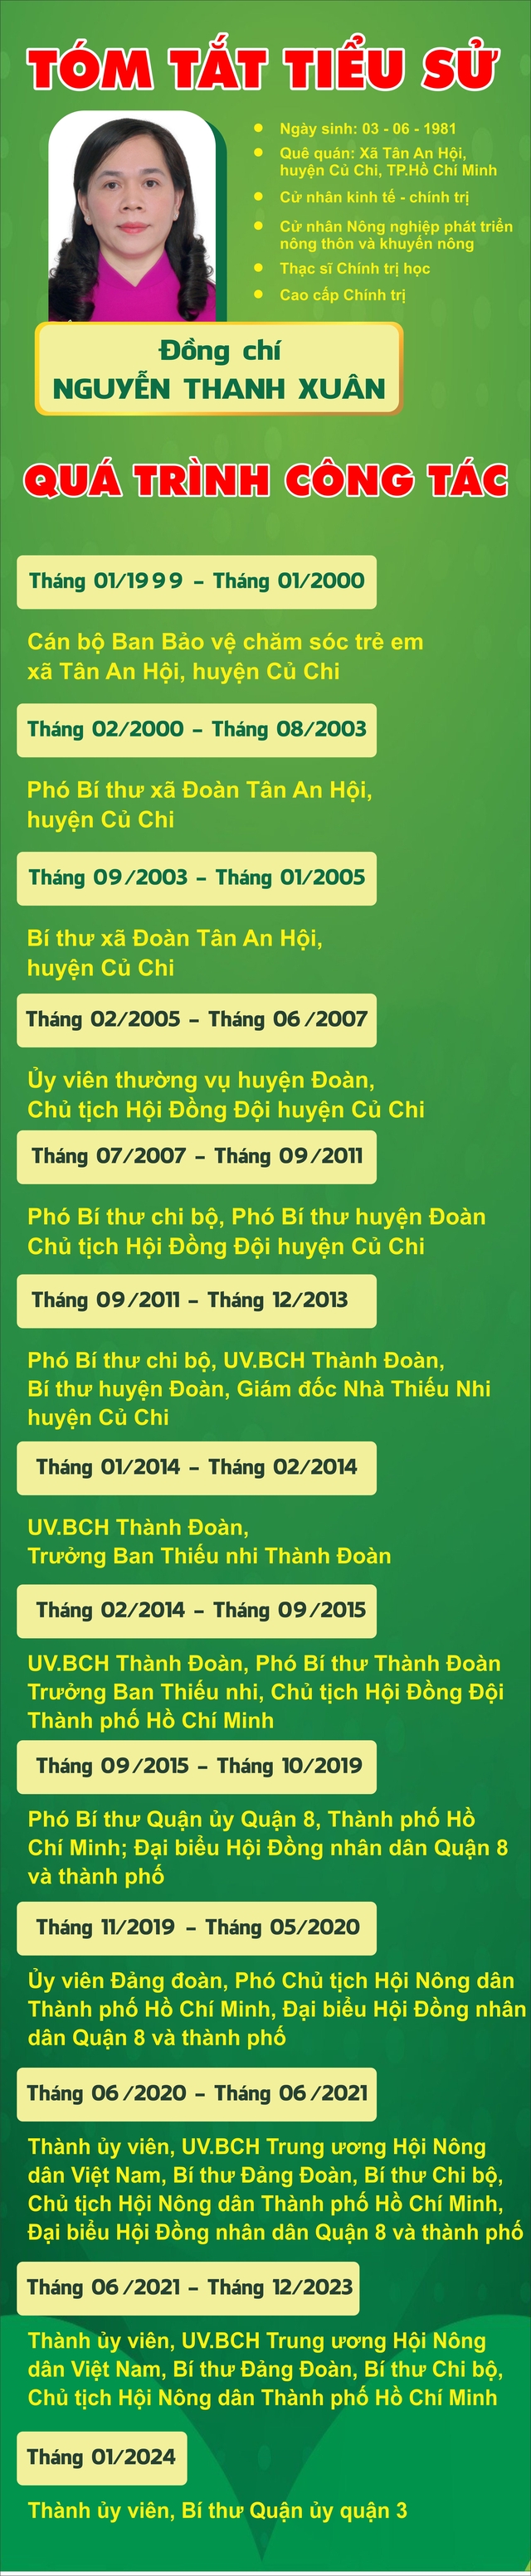 TP HCM có tân Bí thư Quận ủy quận 3 và quận Phú Nhuận- Ảnh 3.